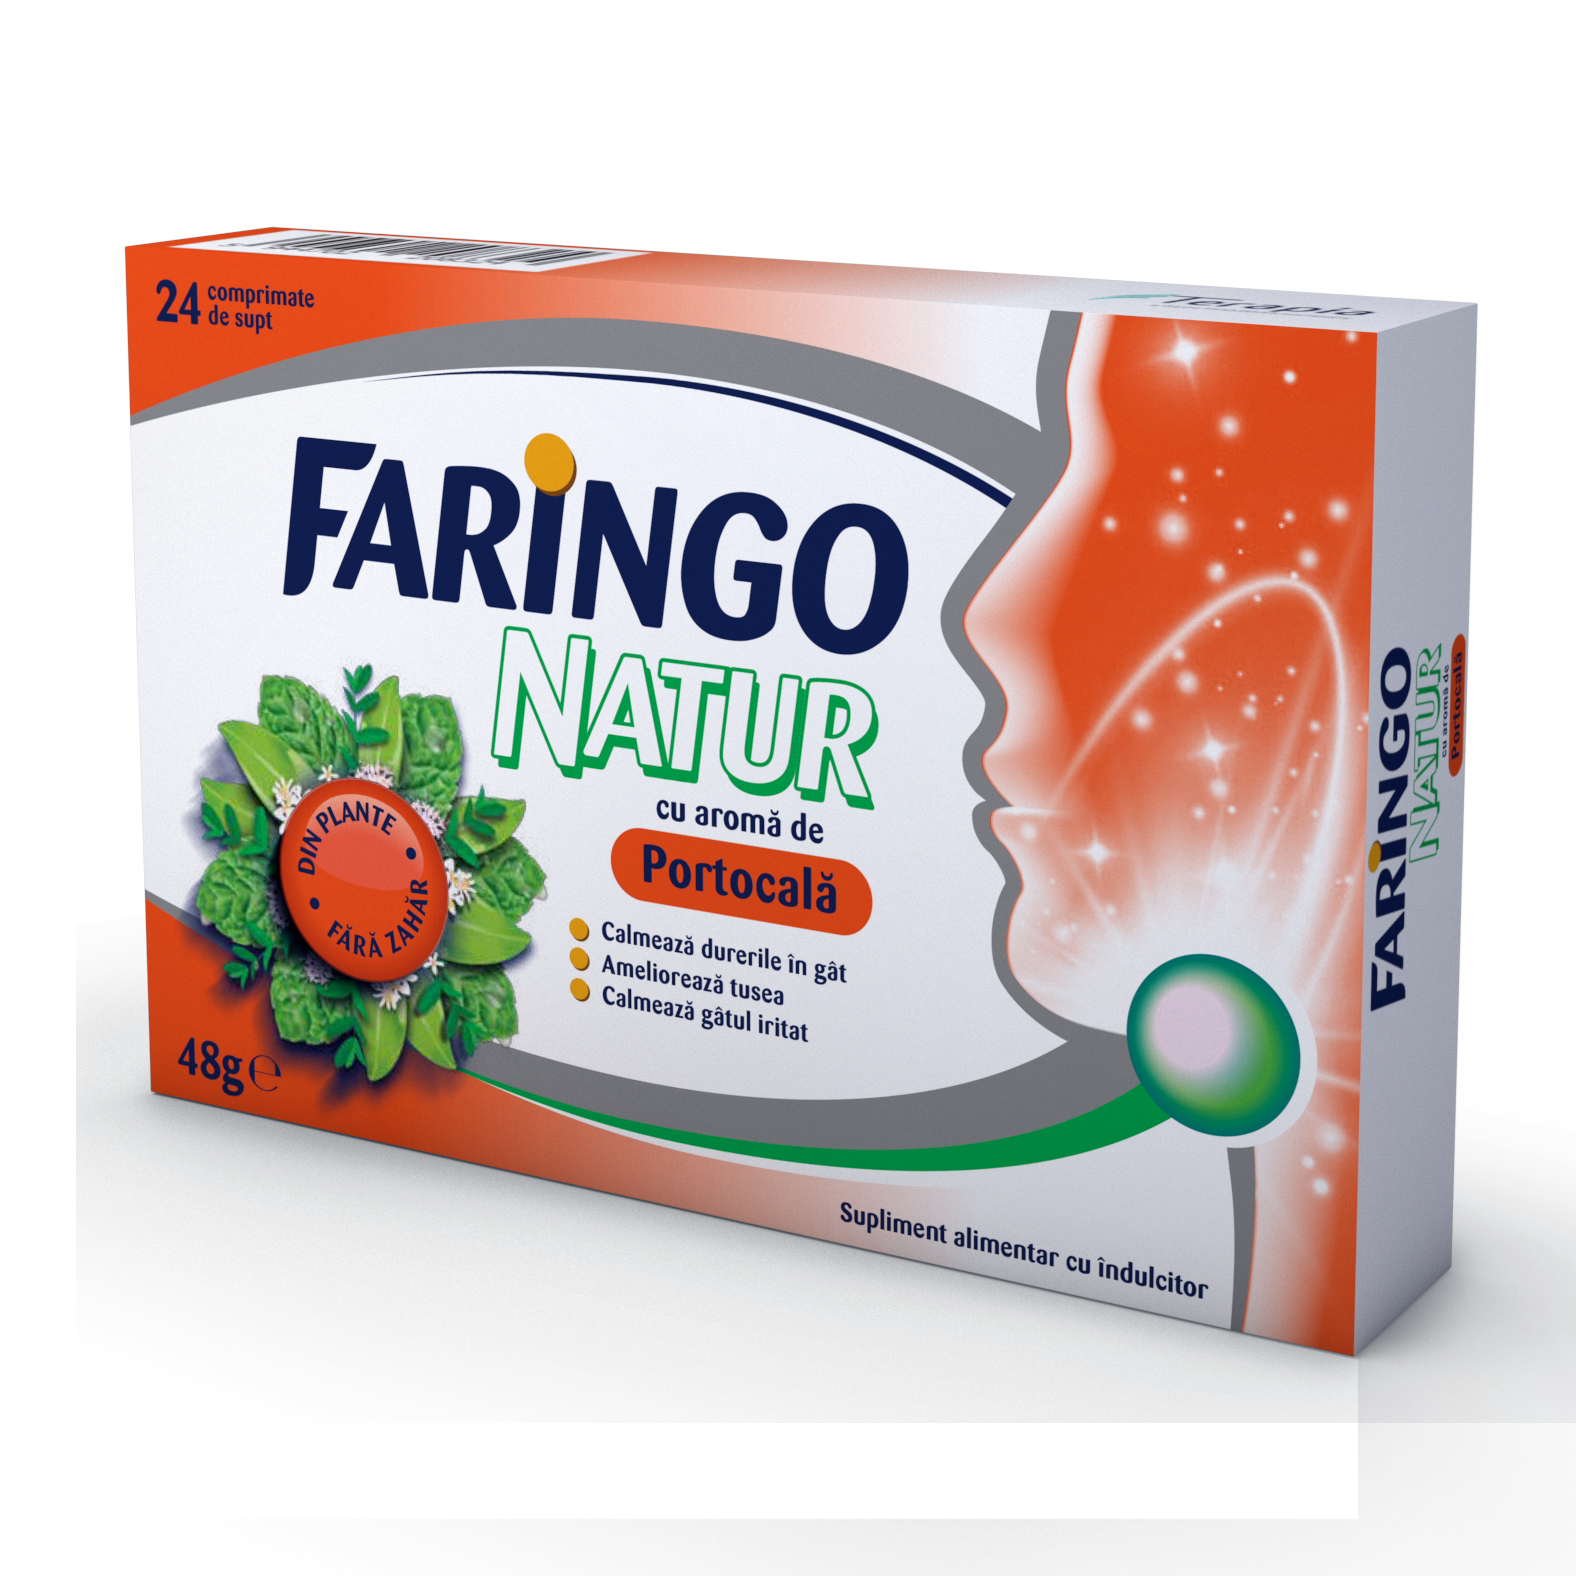 Faringo Natur cu aroma de portocale, 24 comprimate, Terapia